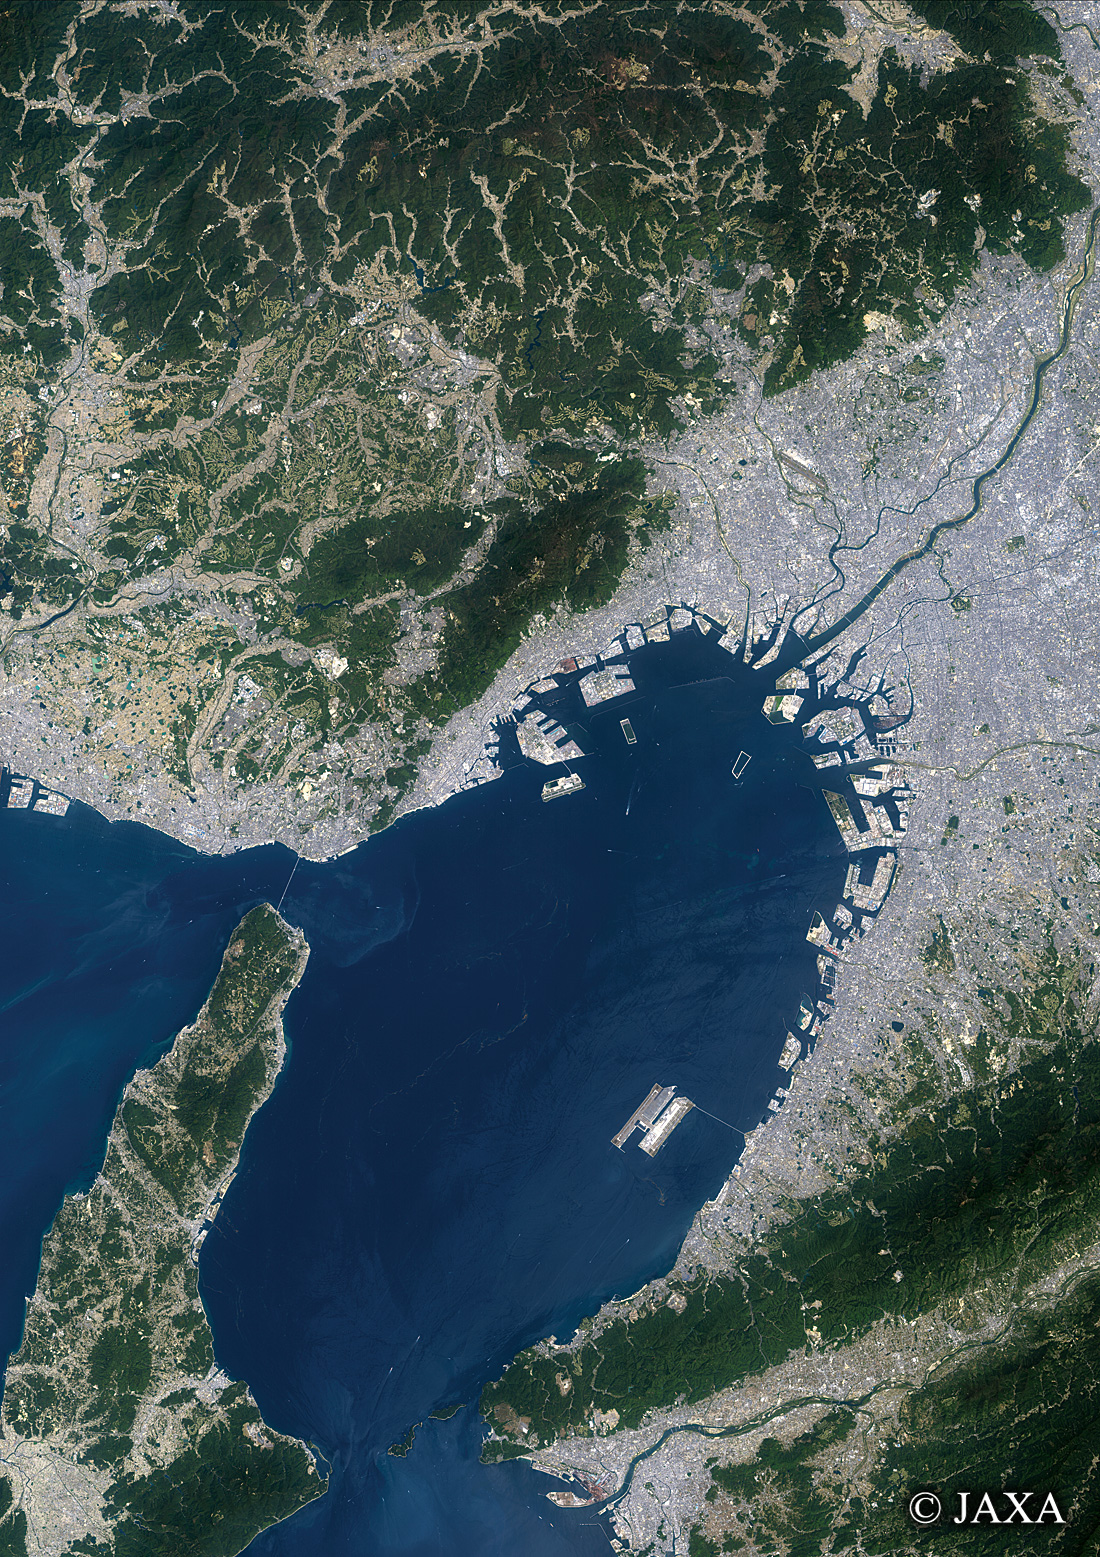 だいちから見た日本の都市 大阪湾周辺地域:衛星画像